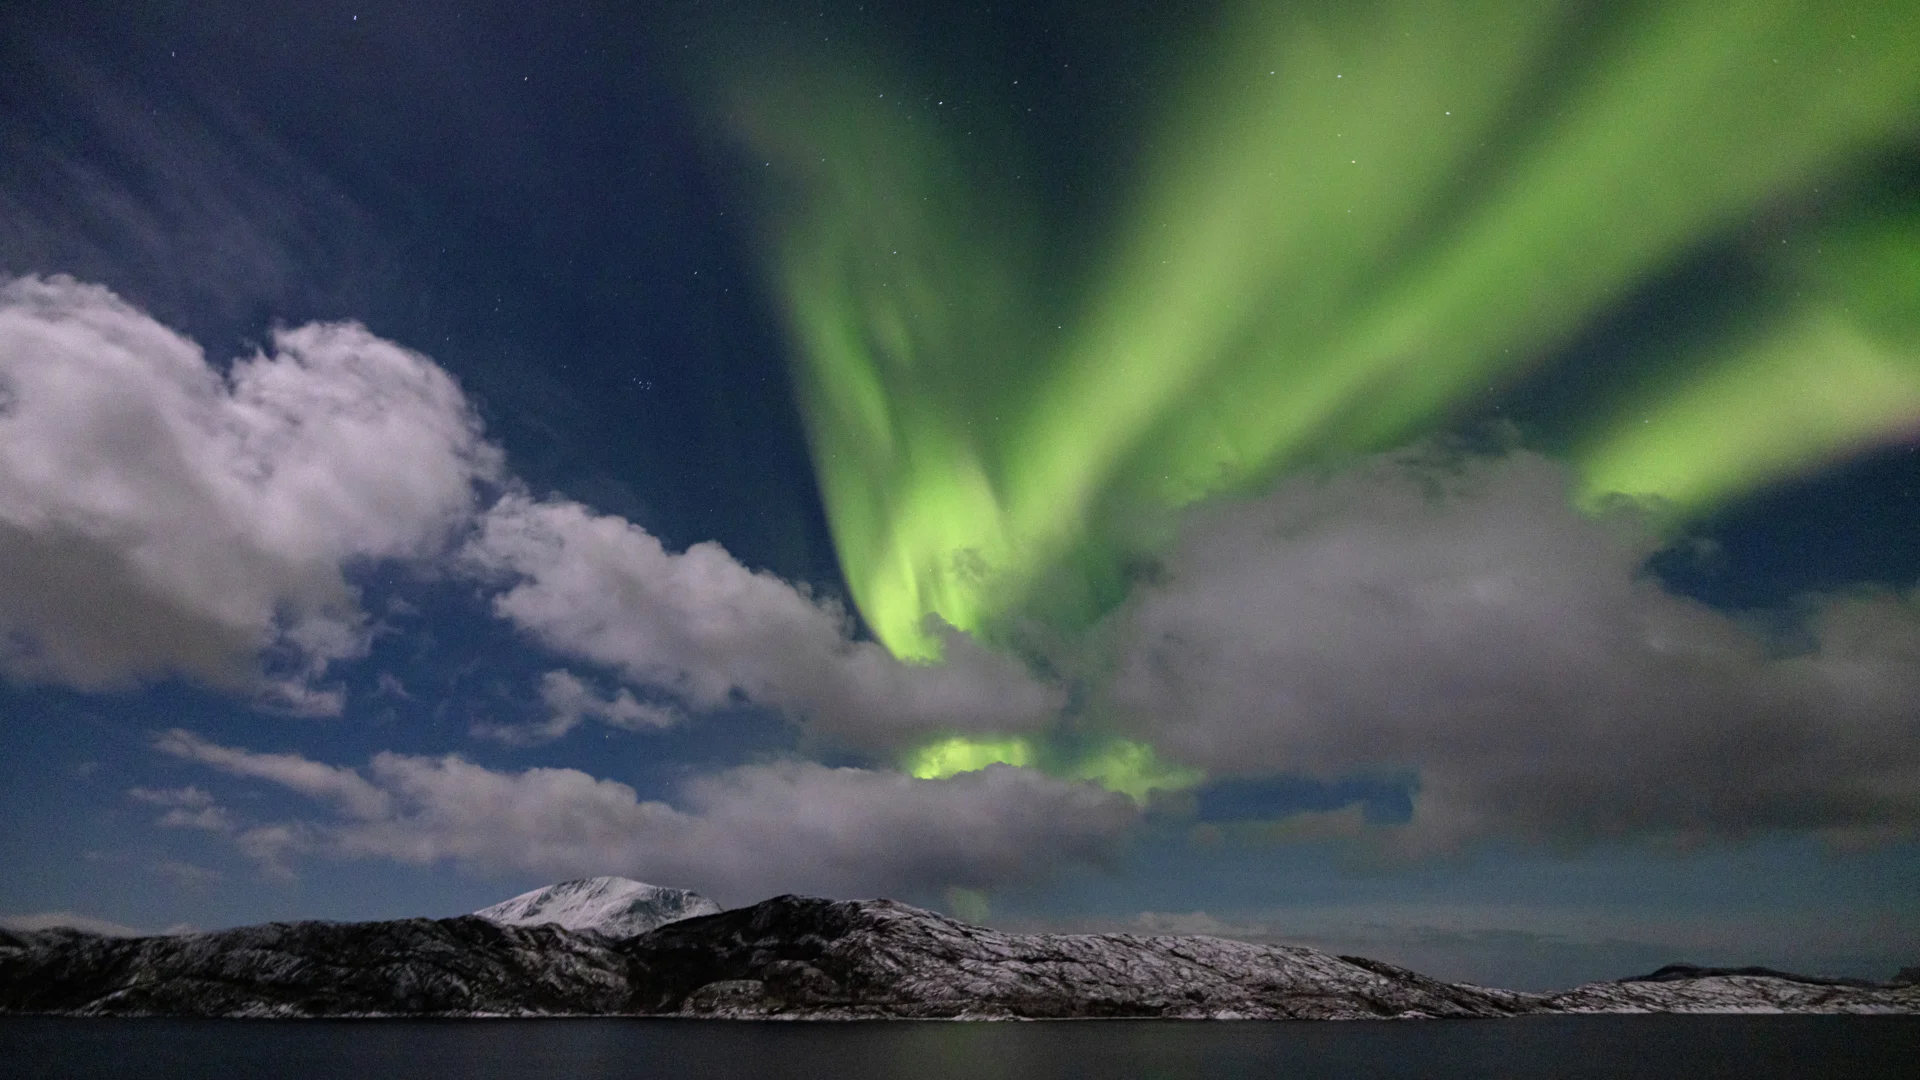 Northern lights above the Lofoten Islands, Norway. Photo: Espen Mills